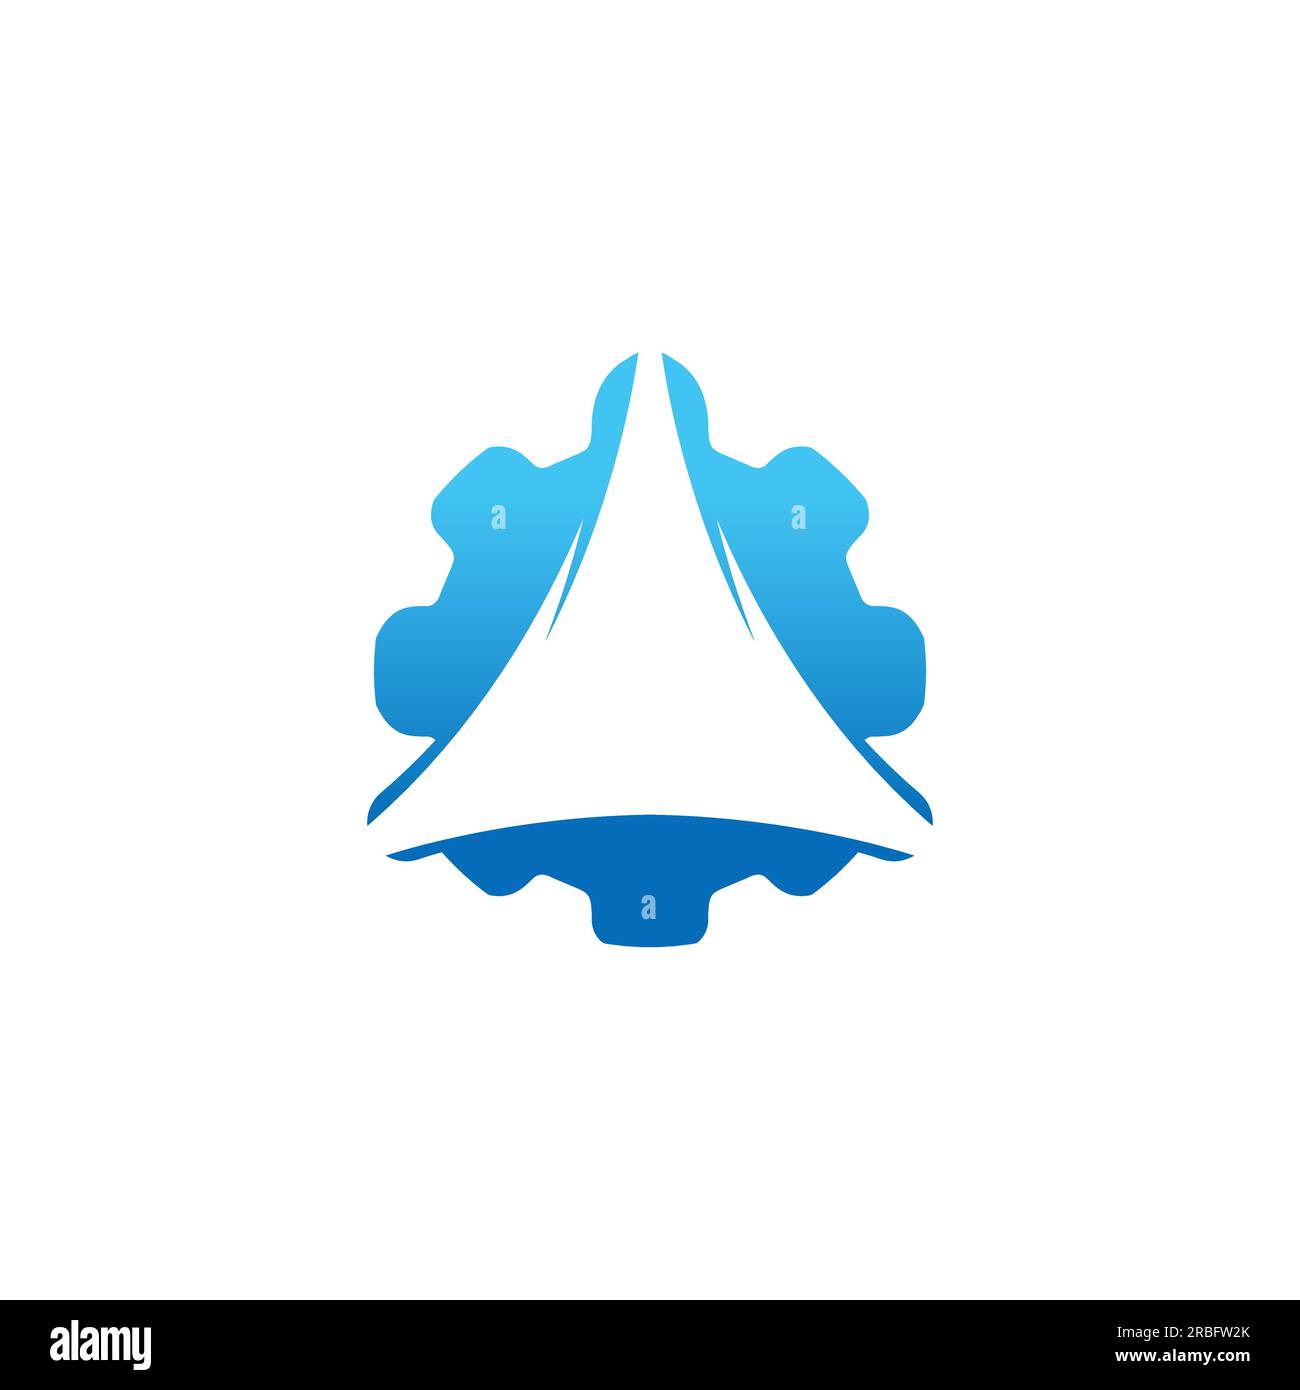 Download del modello di design del logo vettoriale Triangle Trinity e Gear Icon Gear.EPS 10 Illustrazione Vettoriale